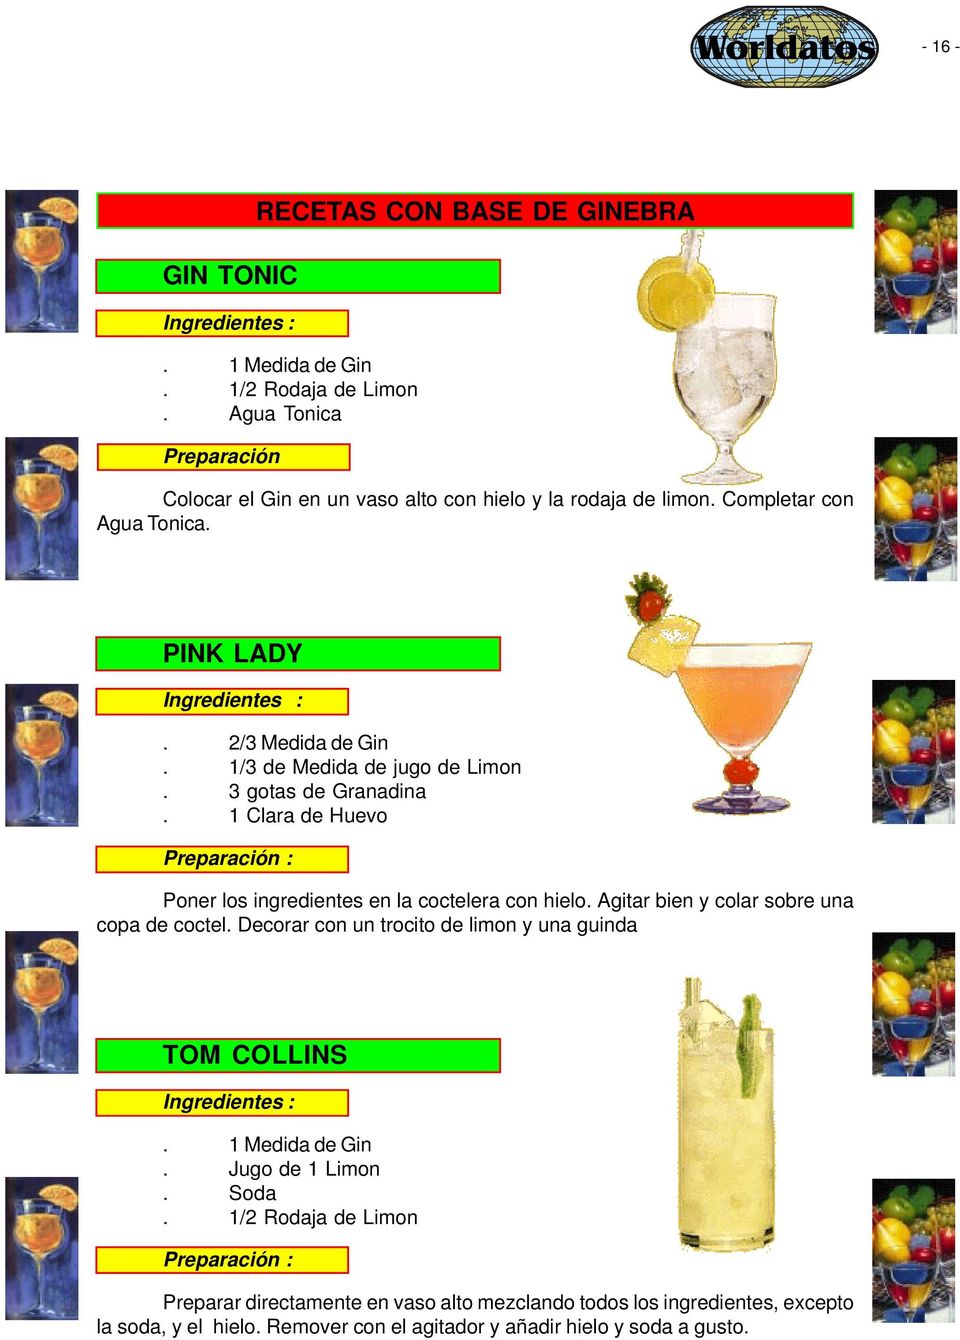 1/3 de Medida de jugo de Limon. 3 gotas de Granadina. 1 Clara de Huevo Poner los ingredientes en la coctelera con hielo. Agitar bien y colar sobre una copa de coctel.